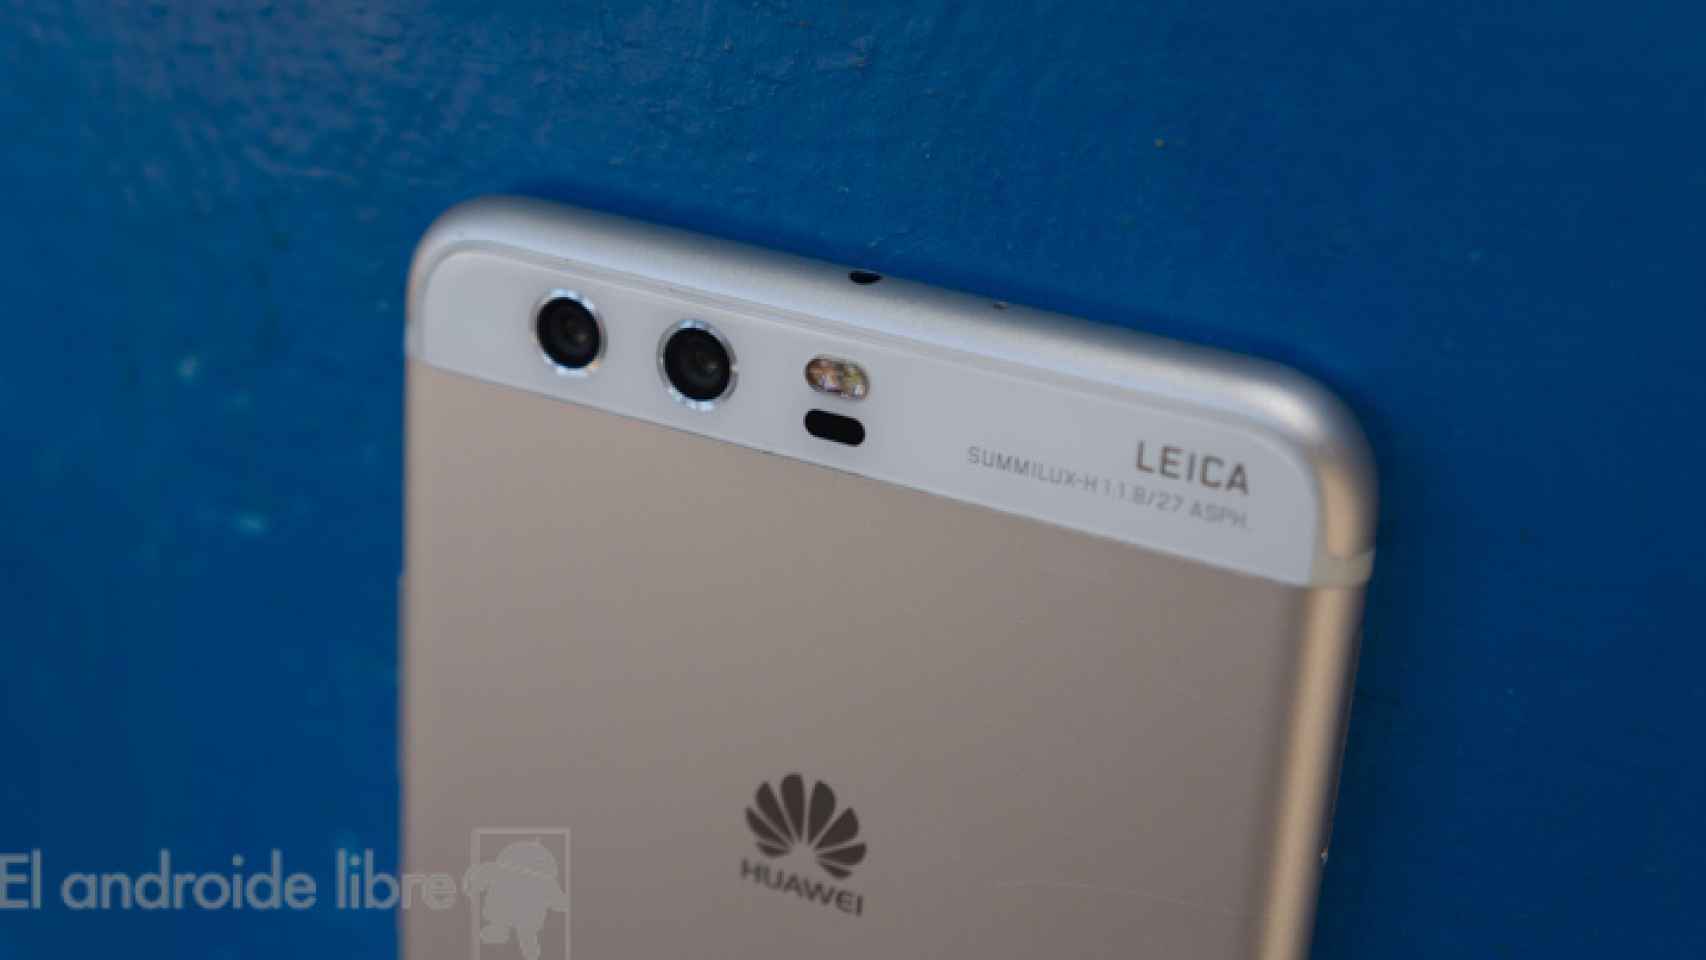 El nuevo Huawei P11 tendrá “notch”, como el iPhone X